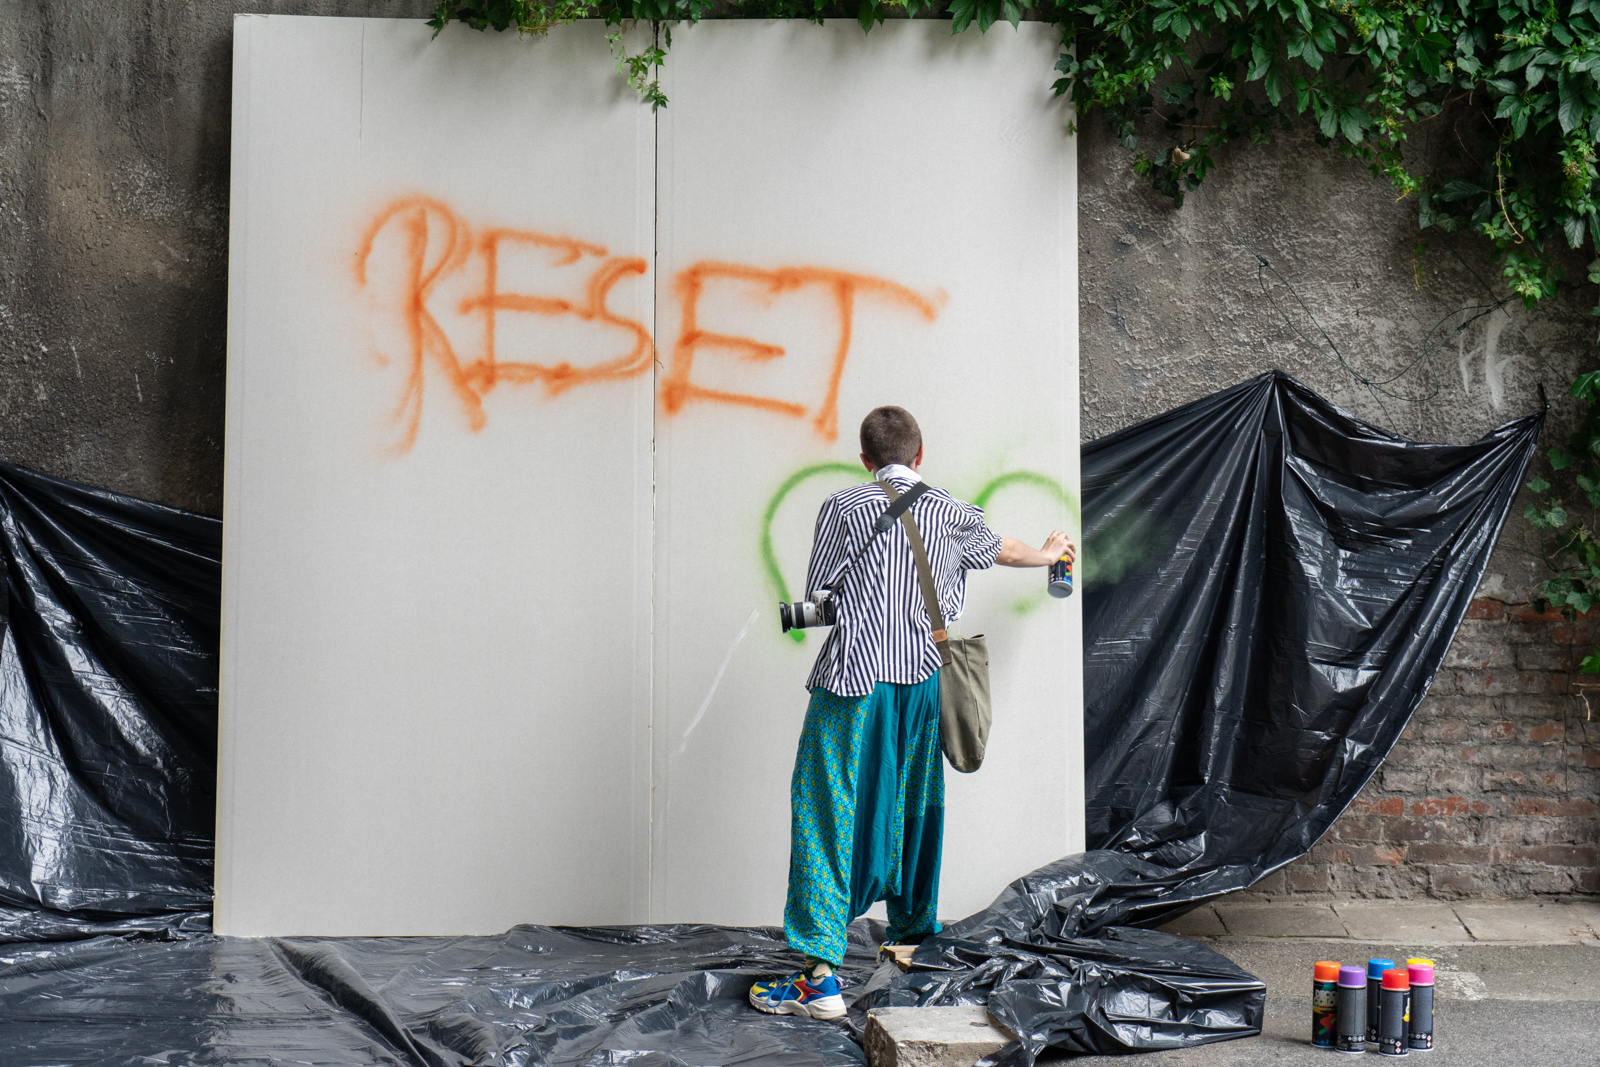 Dziewczyna stoi tyłem do obiektywu i sprayem rysuje napis "RESET" na białym płótnie. - grafika artykułu